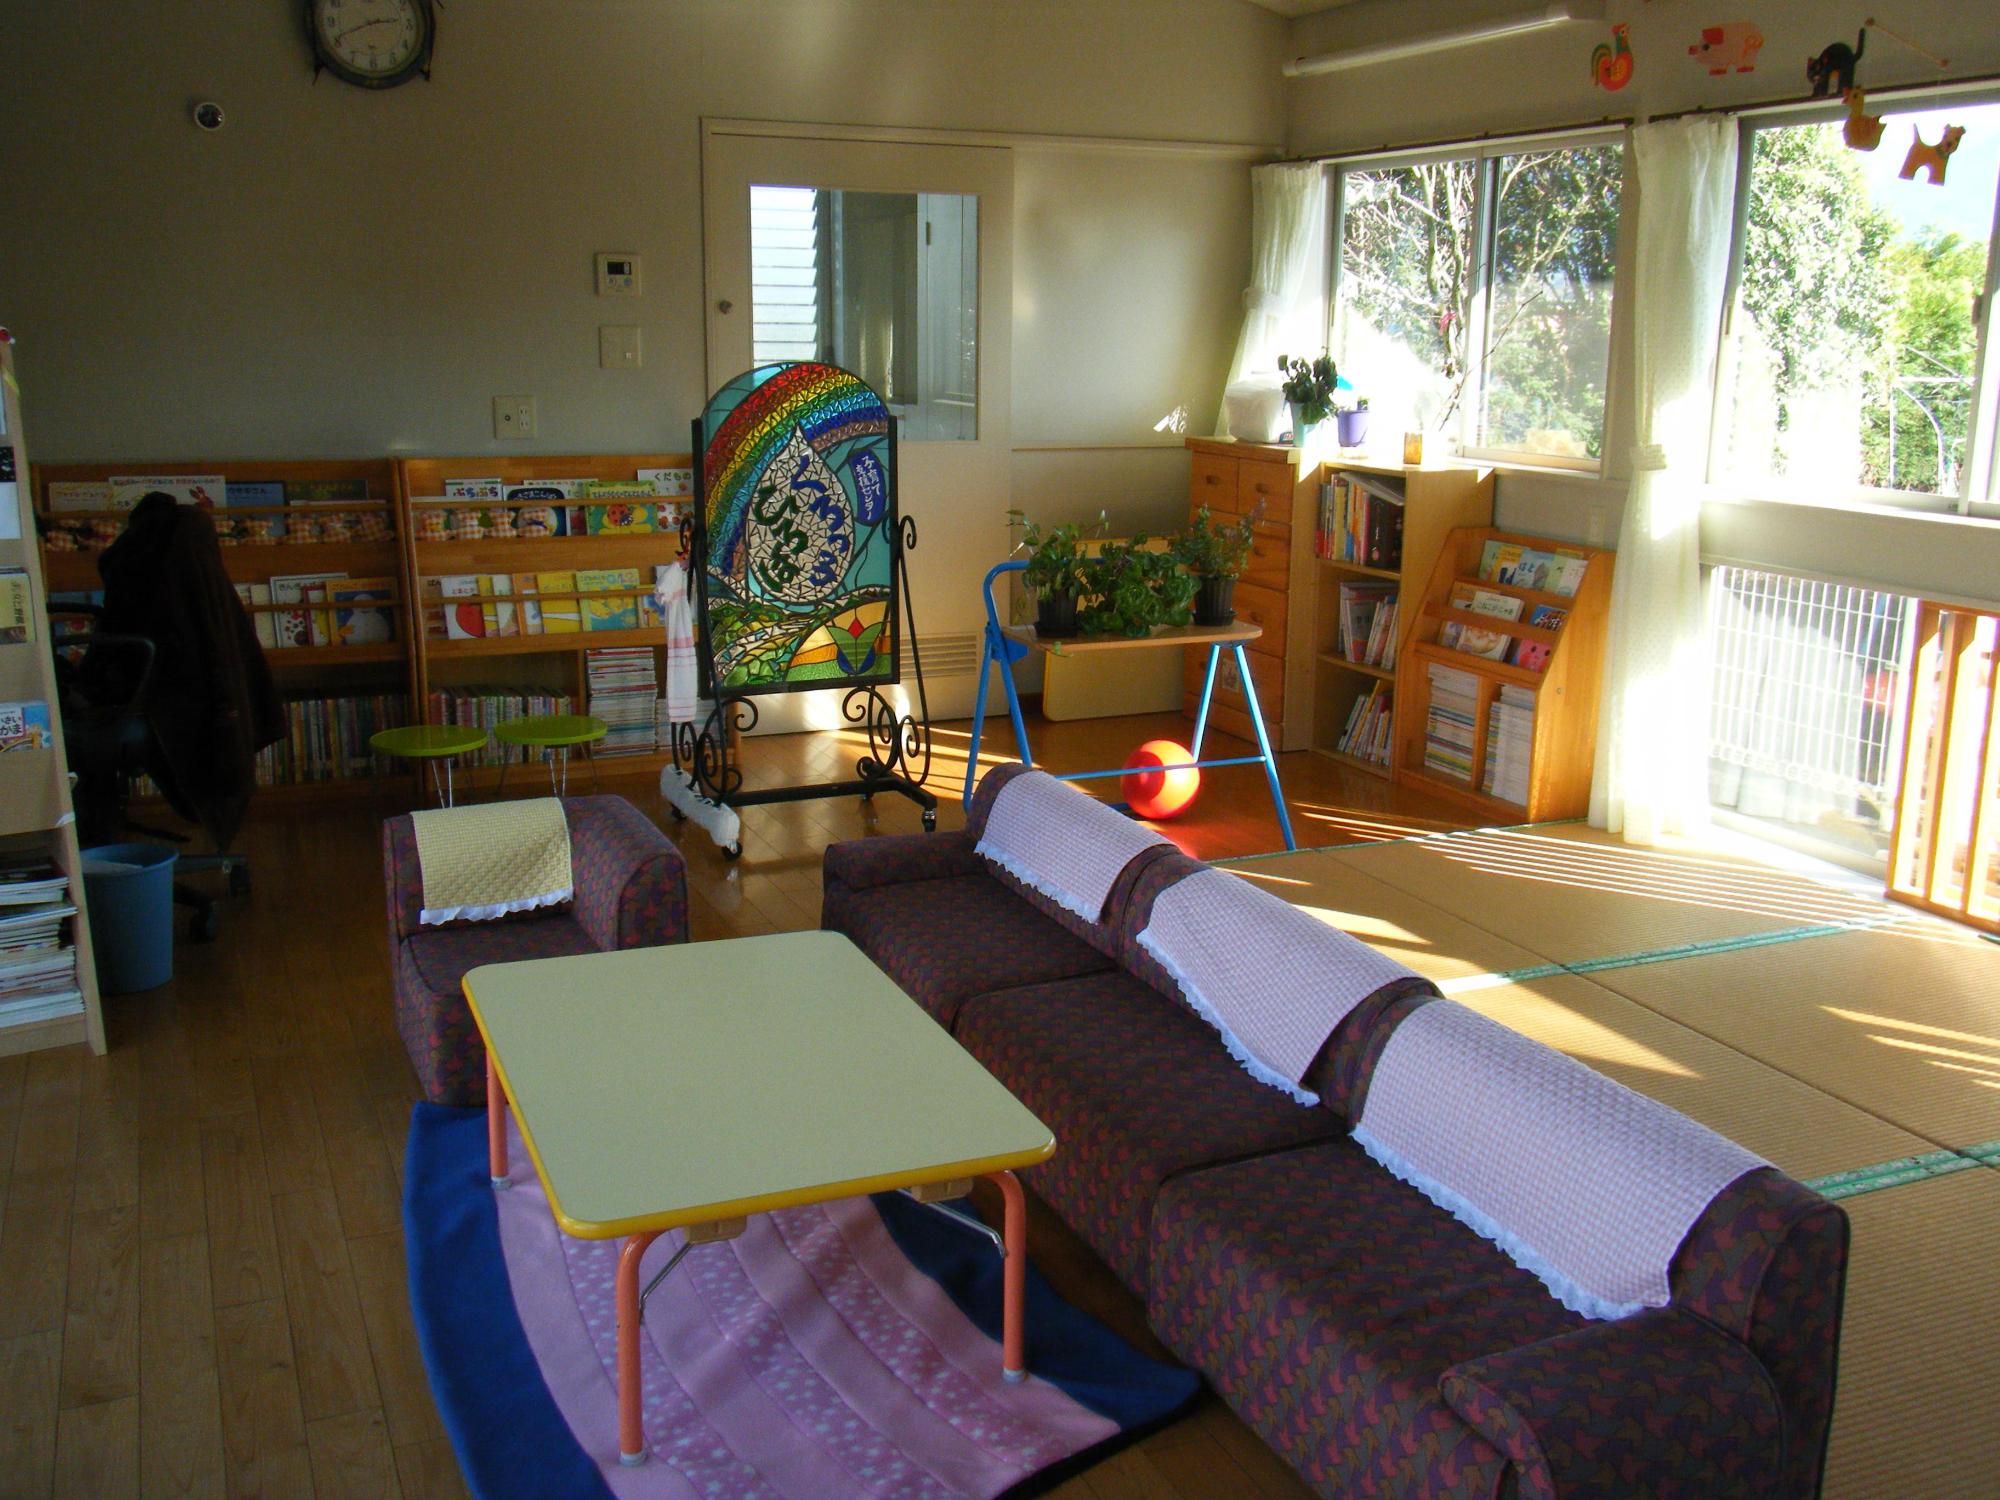 黒肥地保育園子育て支援センター内観の写真。本棚には絵本があり、中央にテーブルと広い横長のソファーがあります。